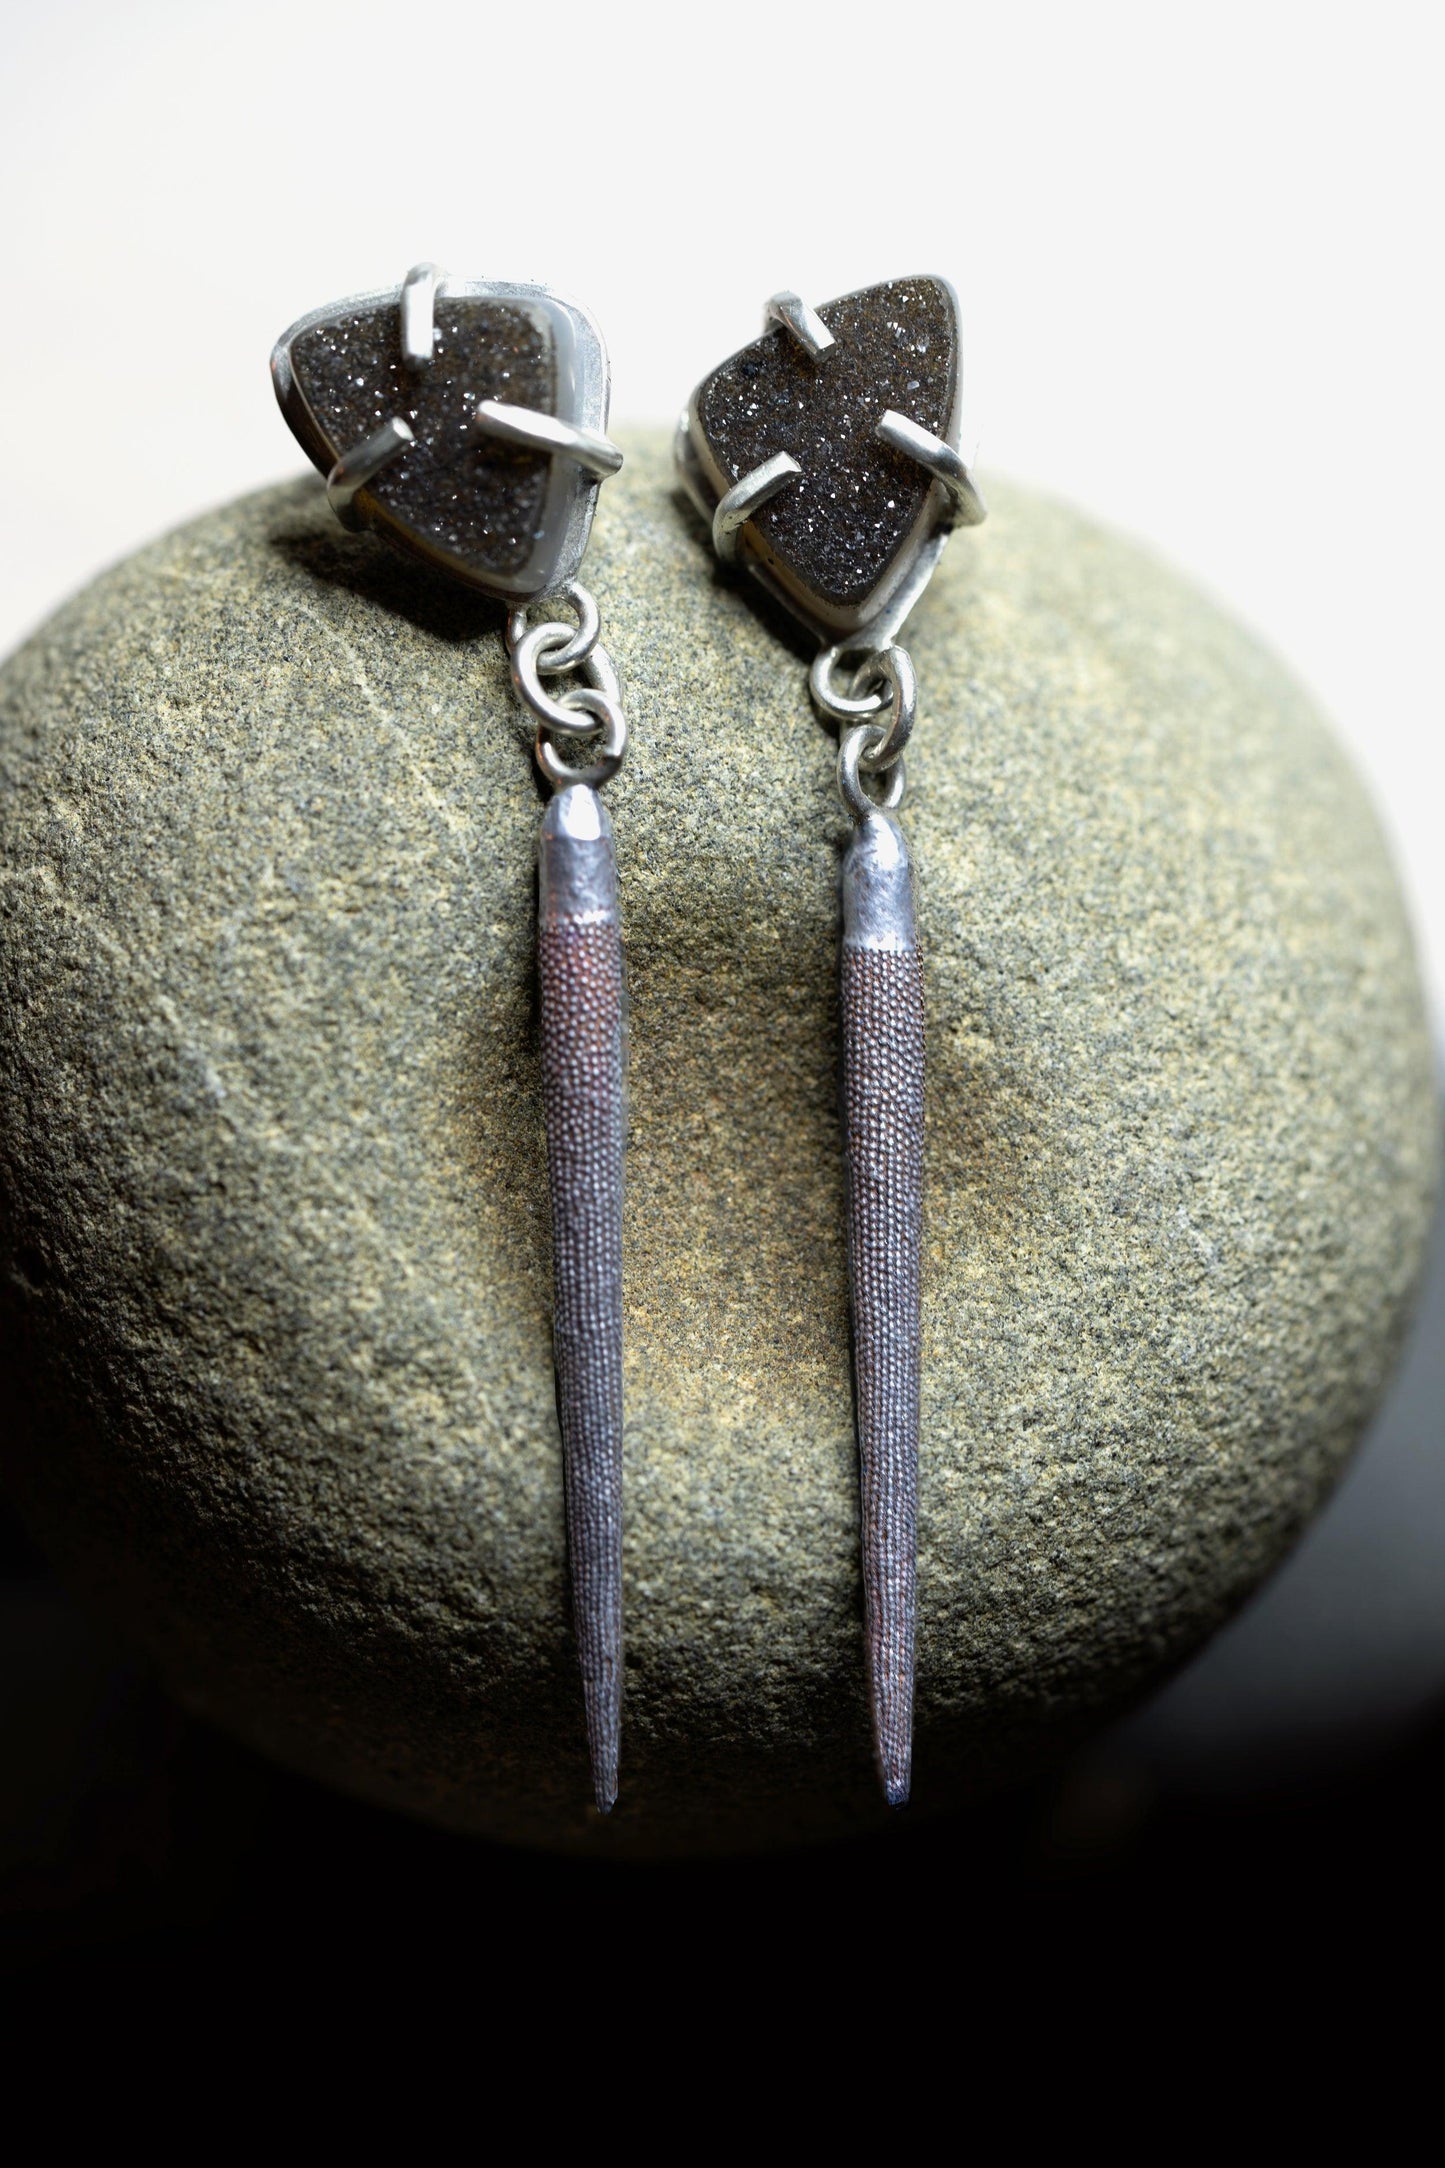 Druzy & Urchin Earrings - Deodata Jewelry Design